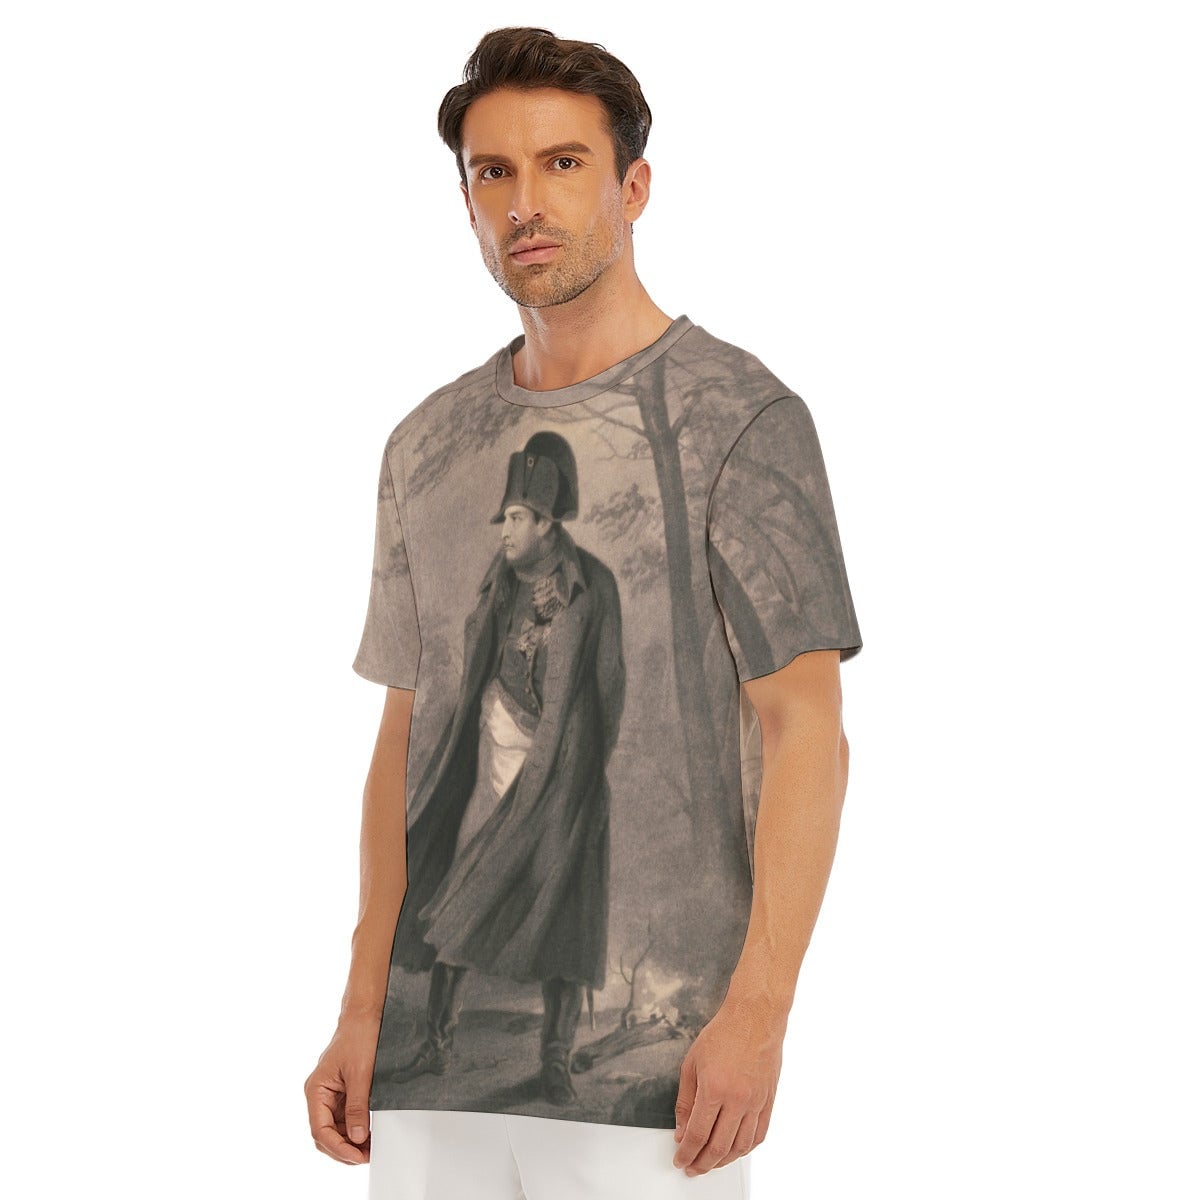 Napoleon I Full-Length Iconic Historical Portrait T-Shirt